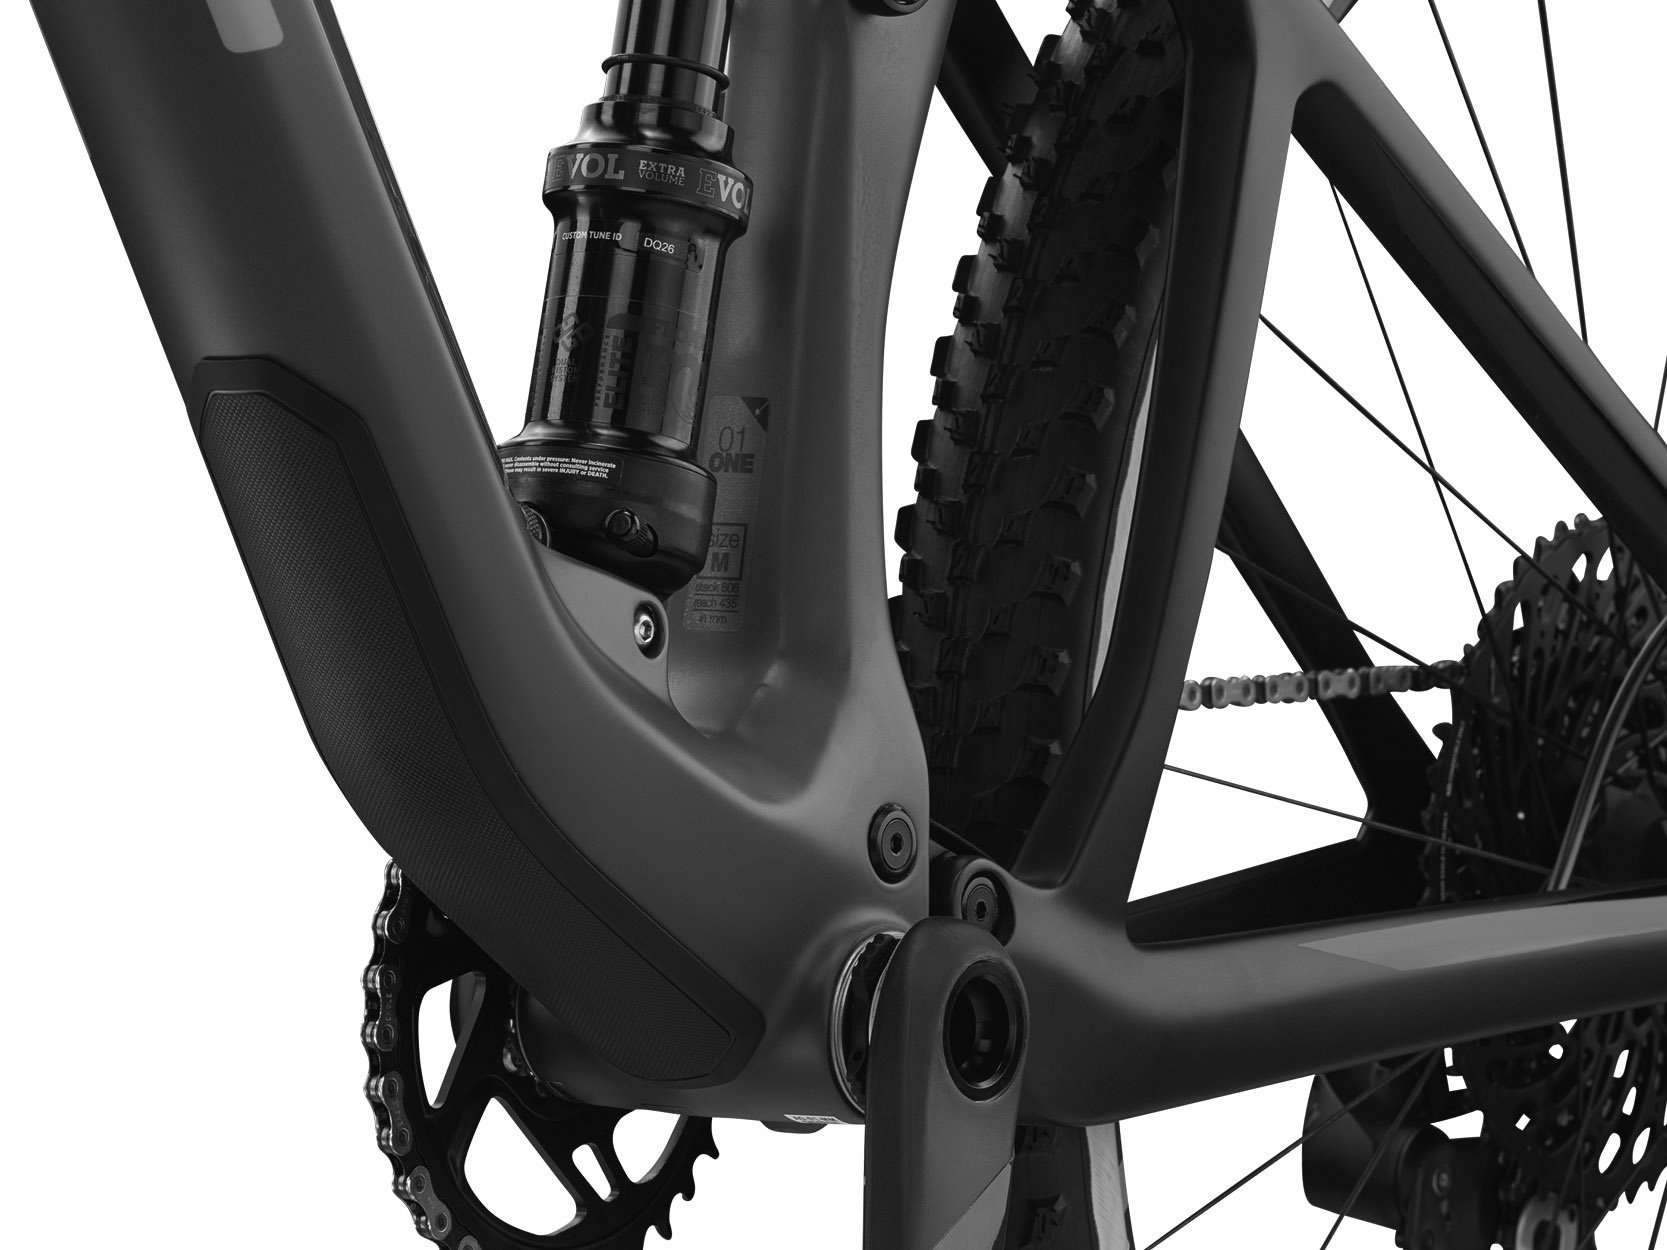 Cykler - Mountainbikes - BMC AGONIST 02 Two 2020